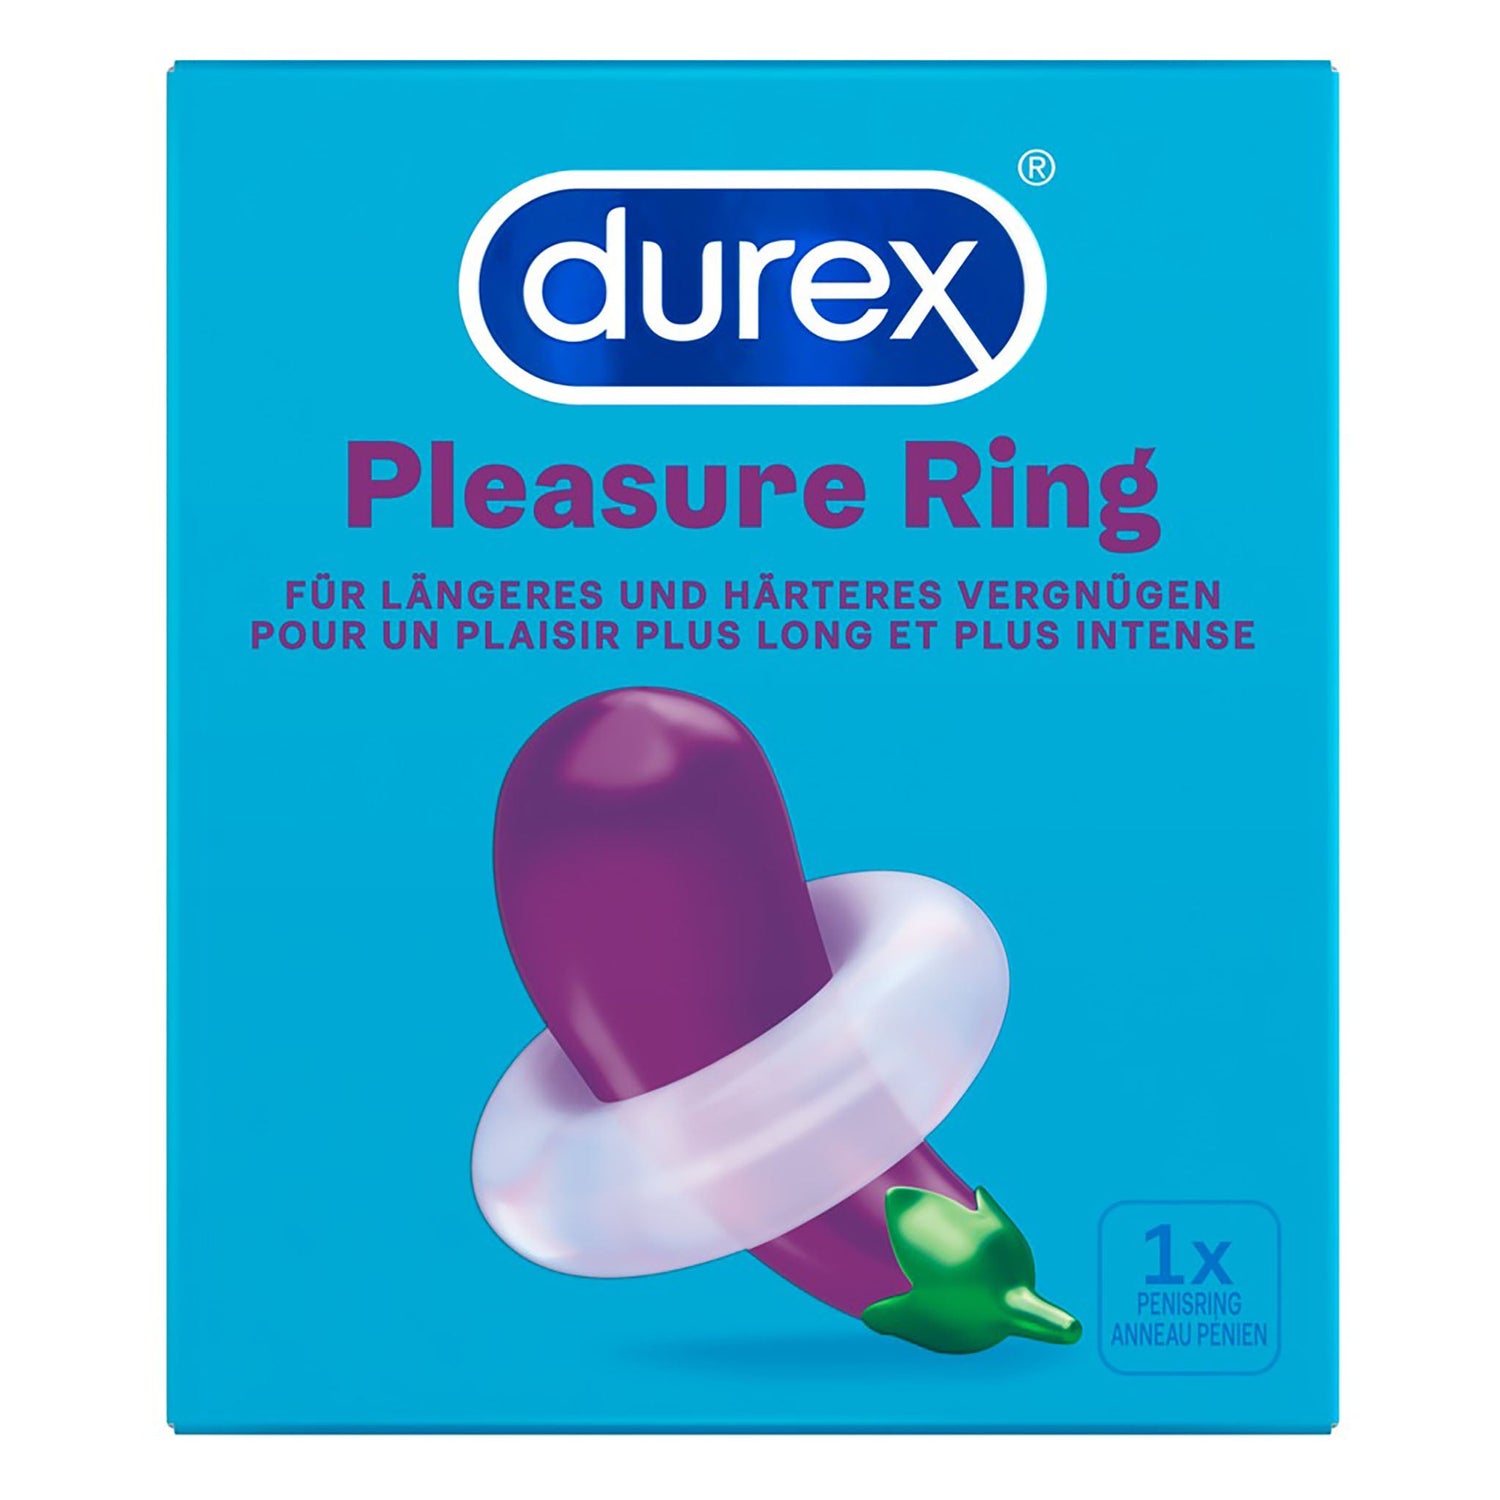 Durex Pleasure Ring Penisring transparent, Verpackung Vorderseite